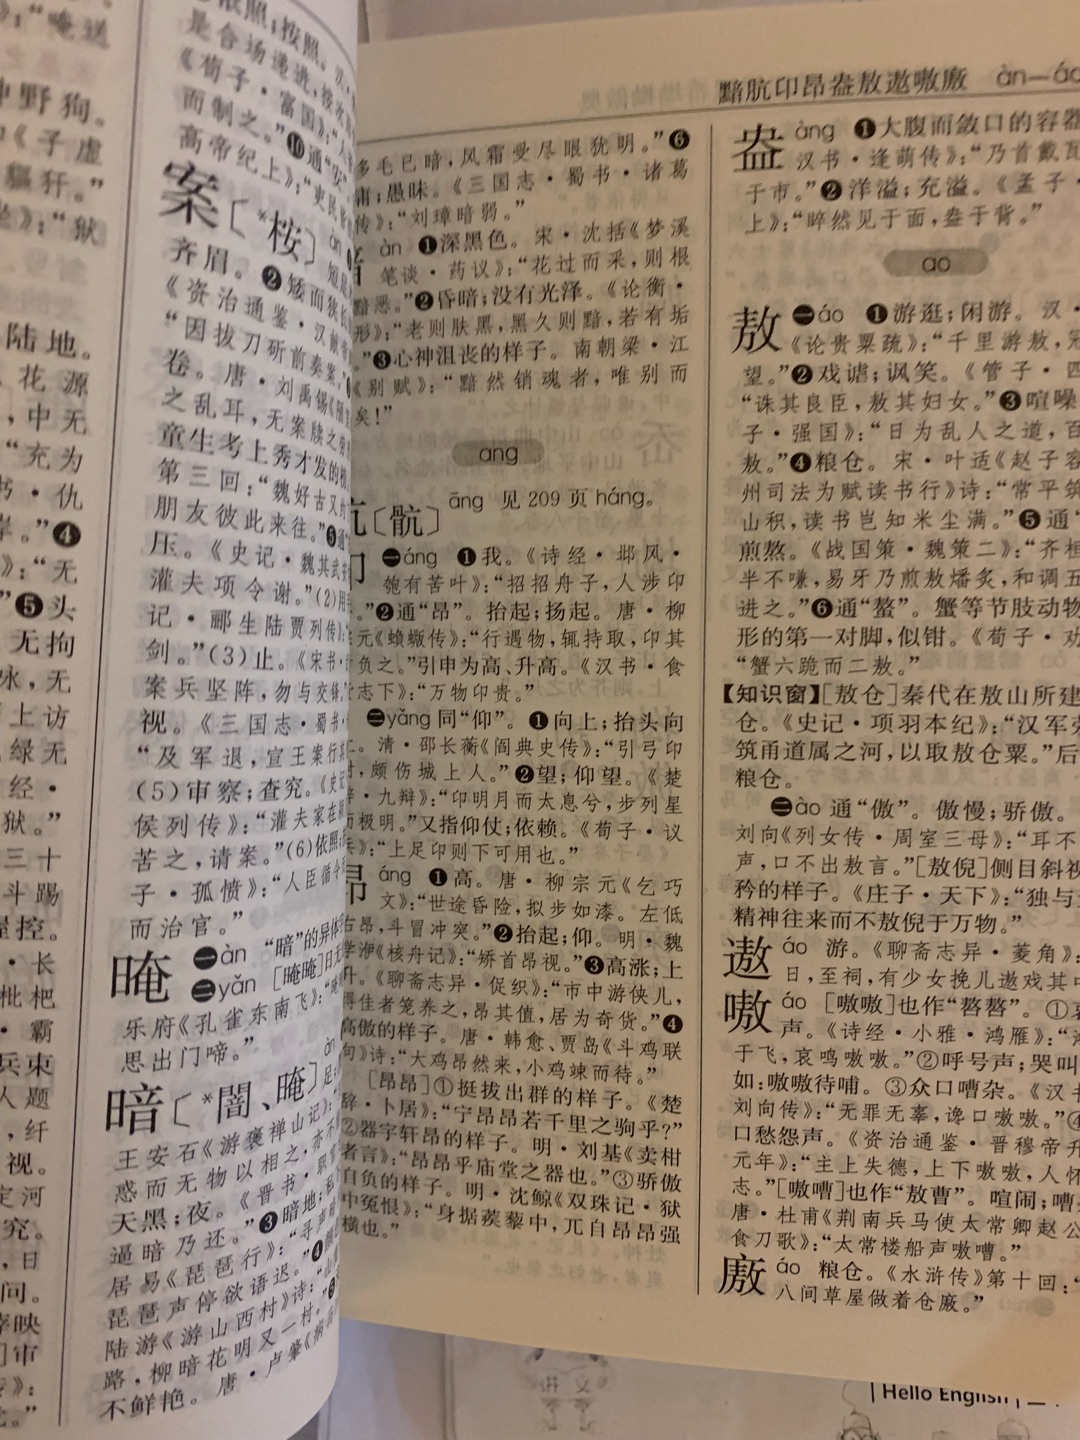 古汉语常用字字典很棒，非常有必要购买，孩子需要用的，查起来也很方便，字迹清晰，正版。